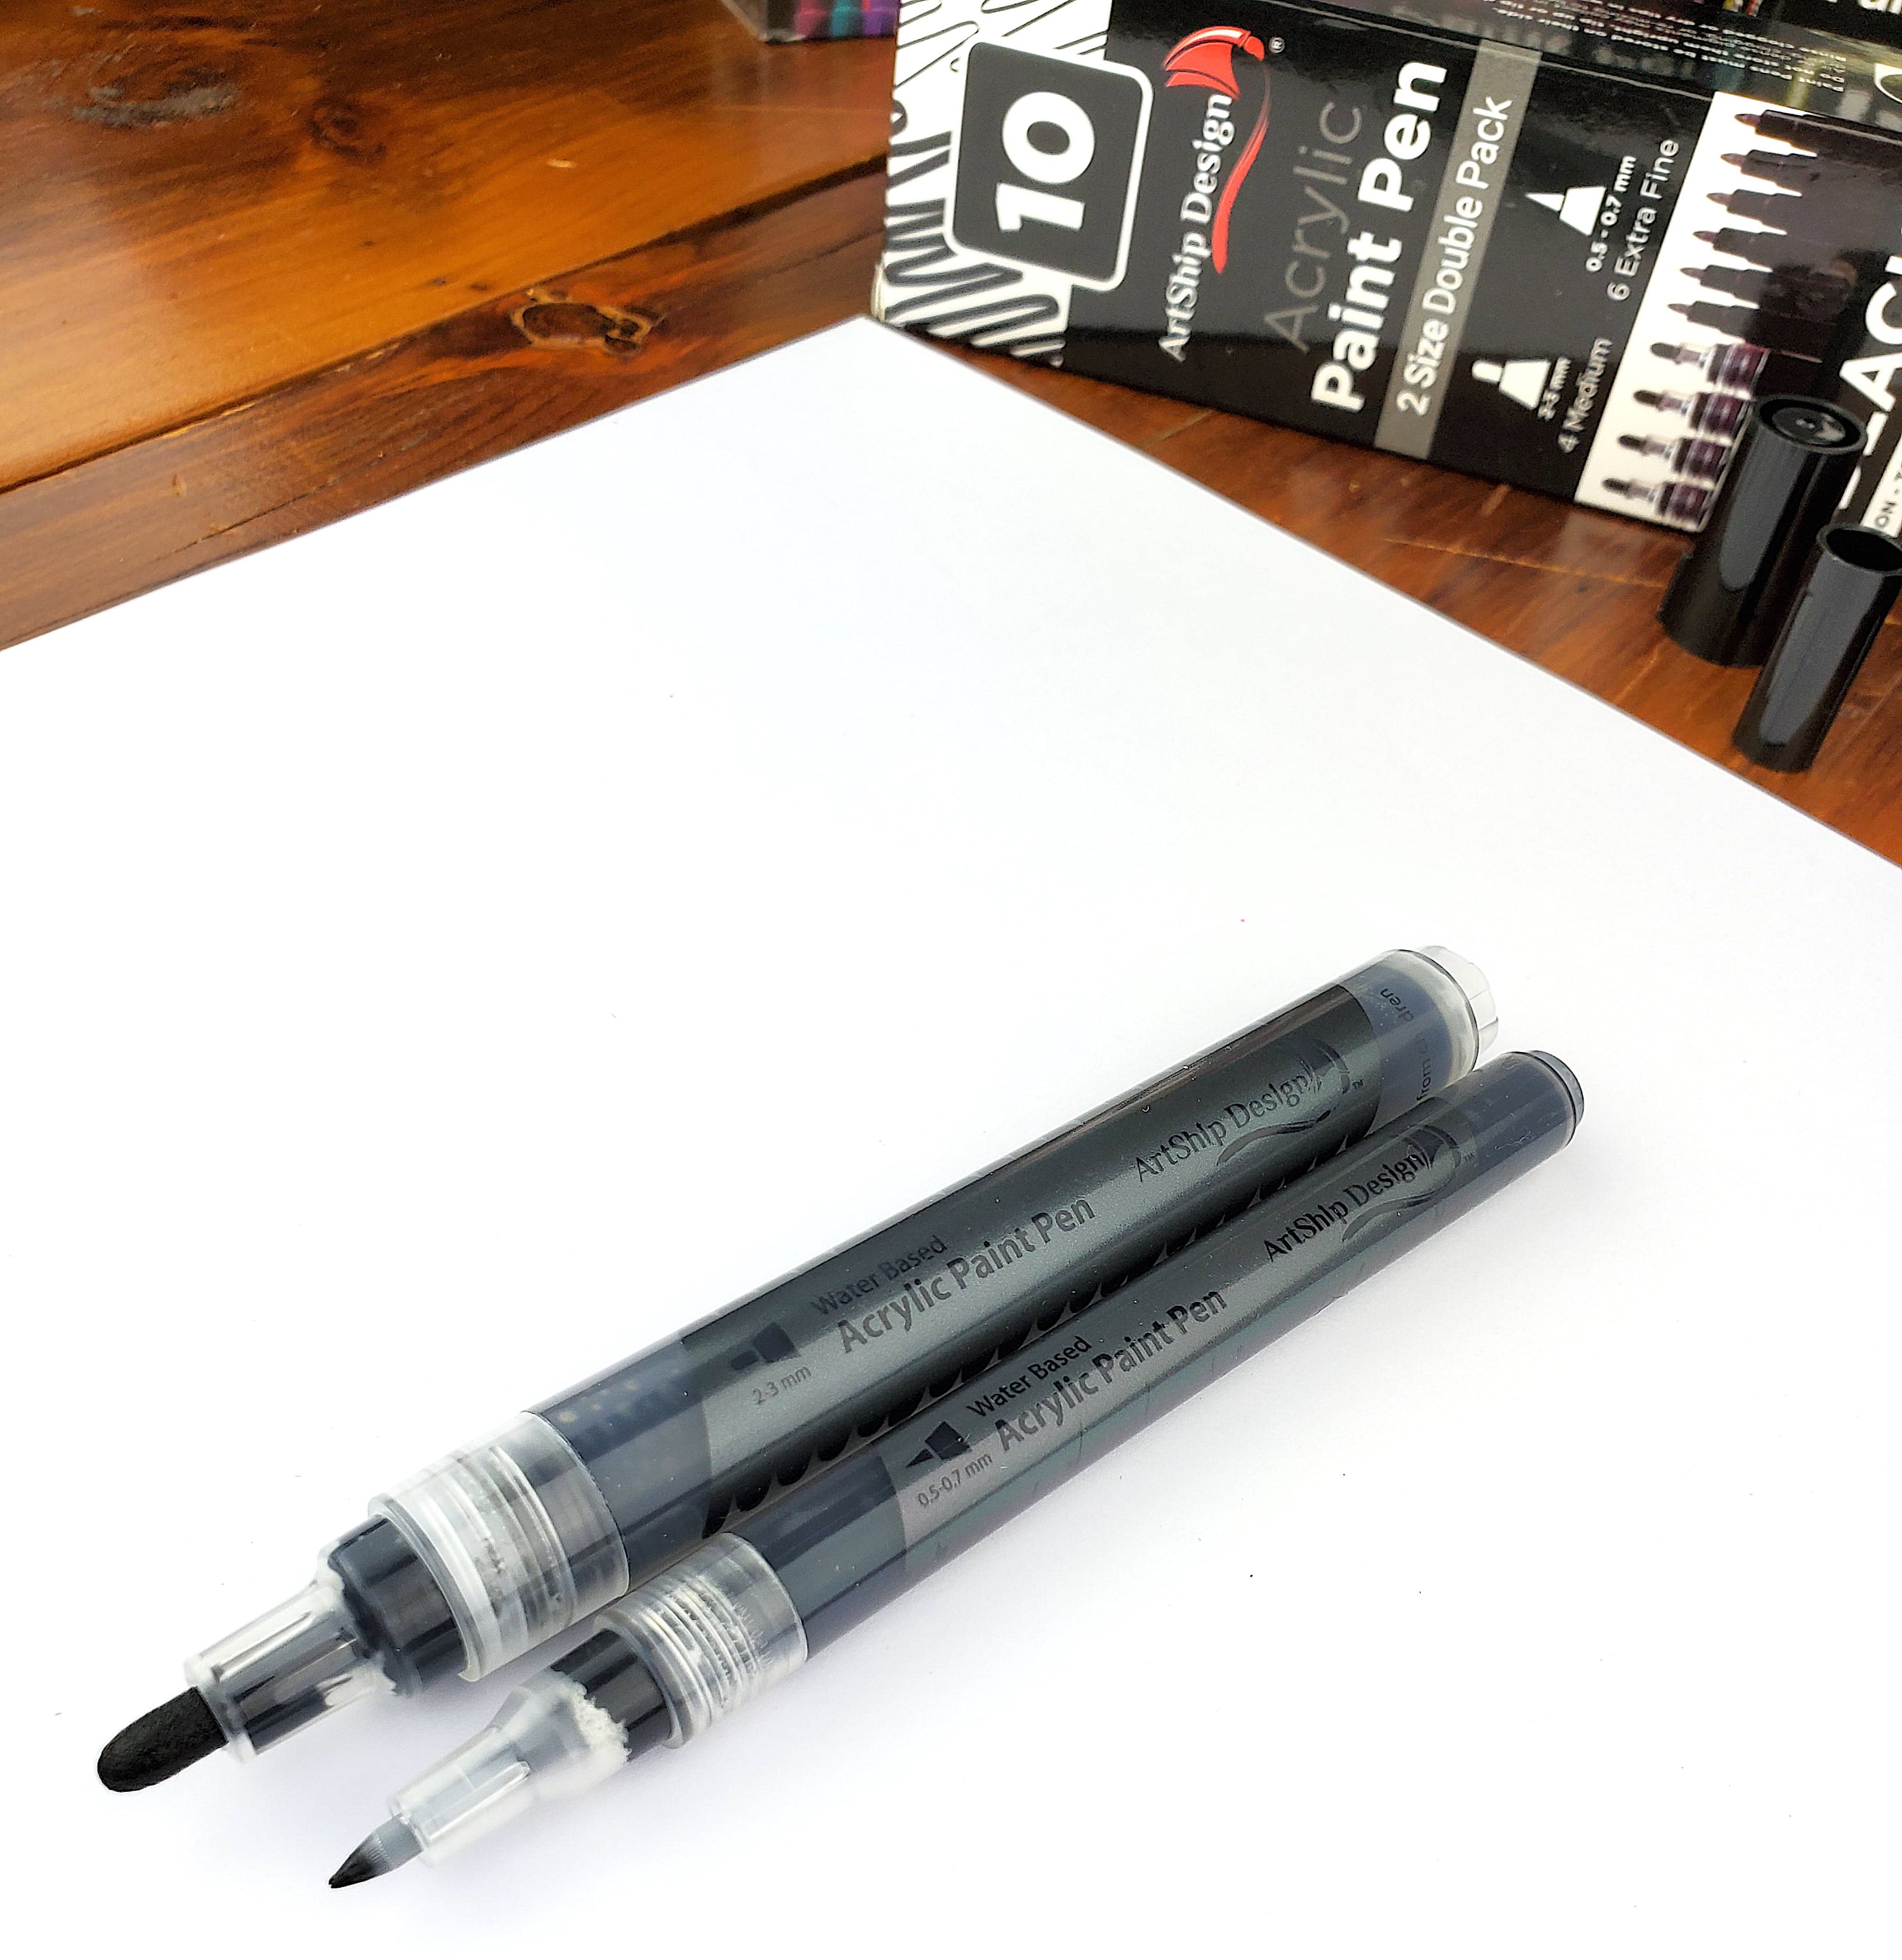 Funcils 5 Acrylic Black Paint Pen - Fine Tip, Thin Point & Jumbo